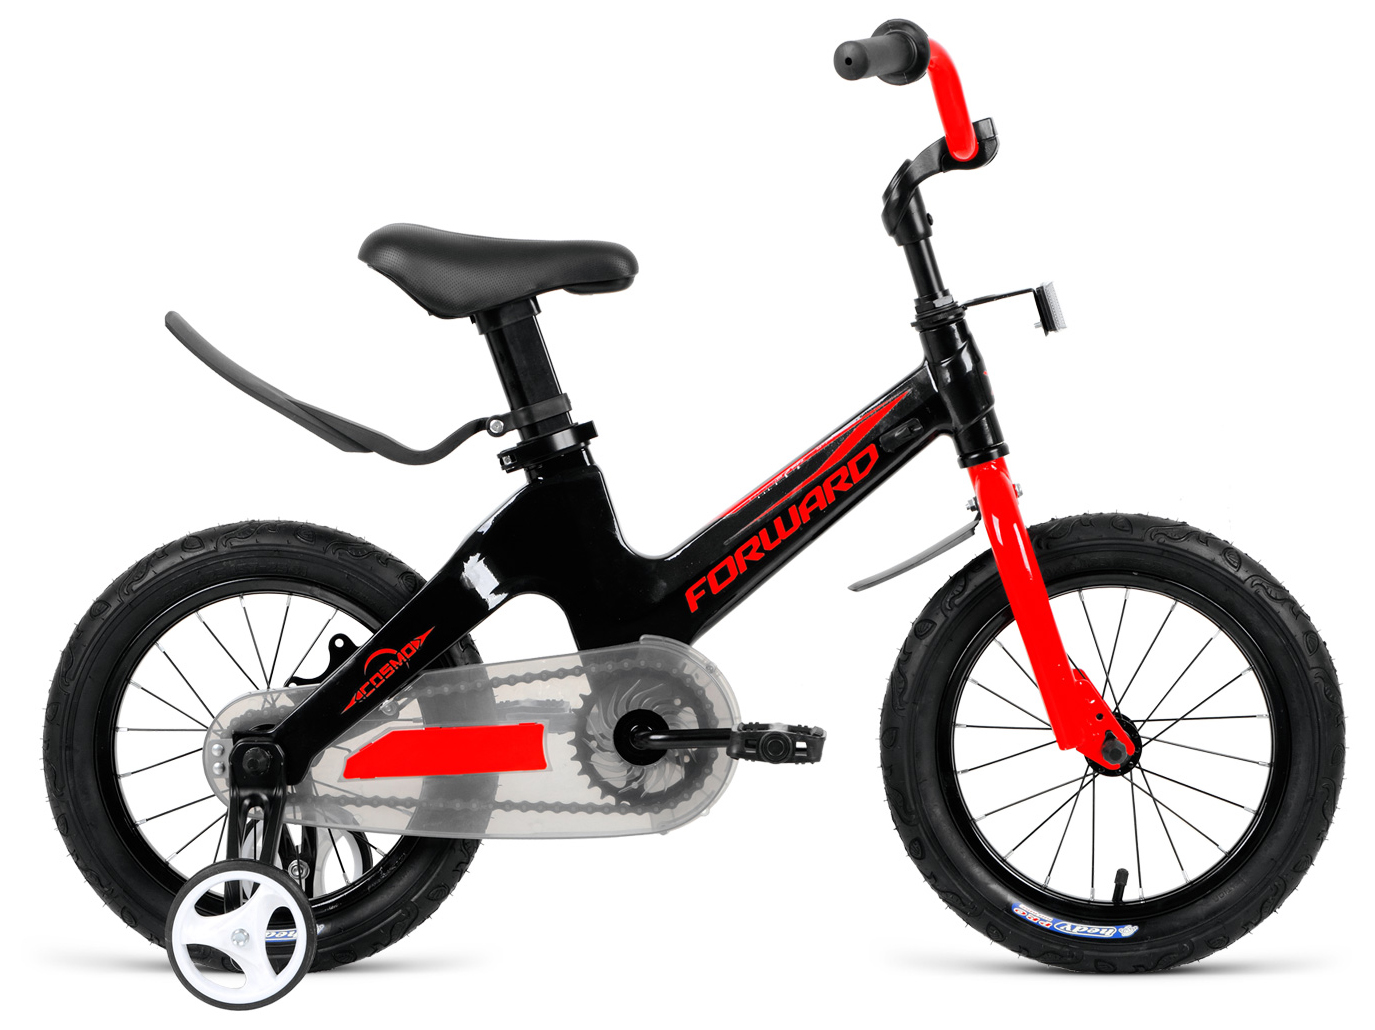  Отзывы о Детском велосипеде Forward Cosmo 14 2020